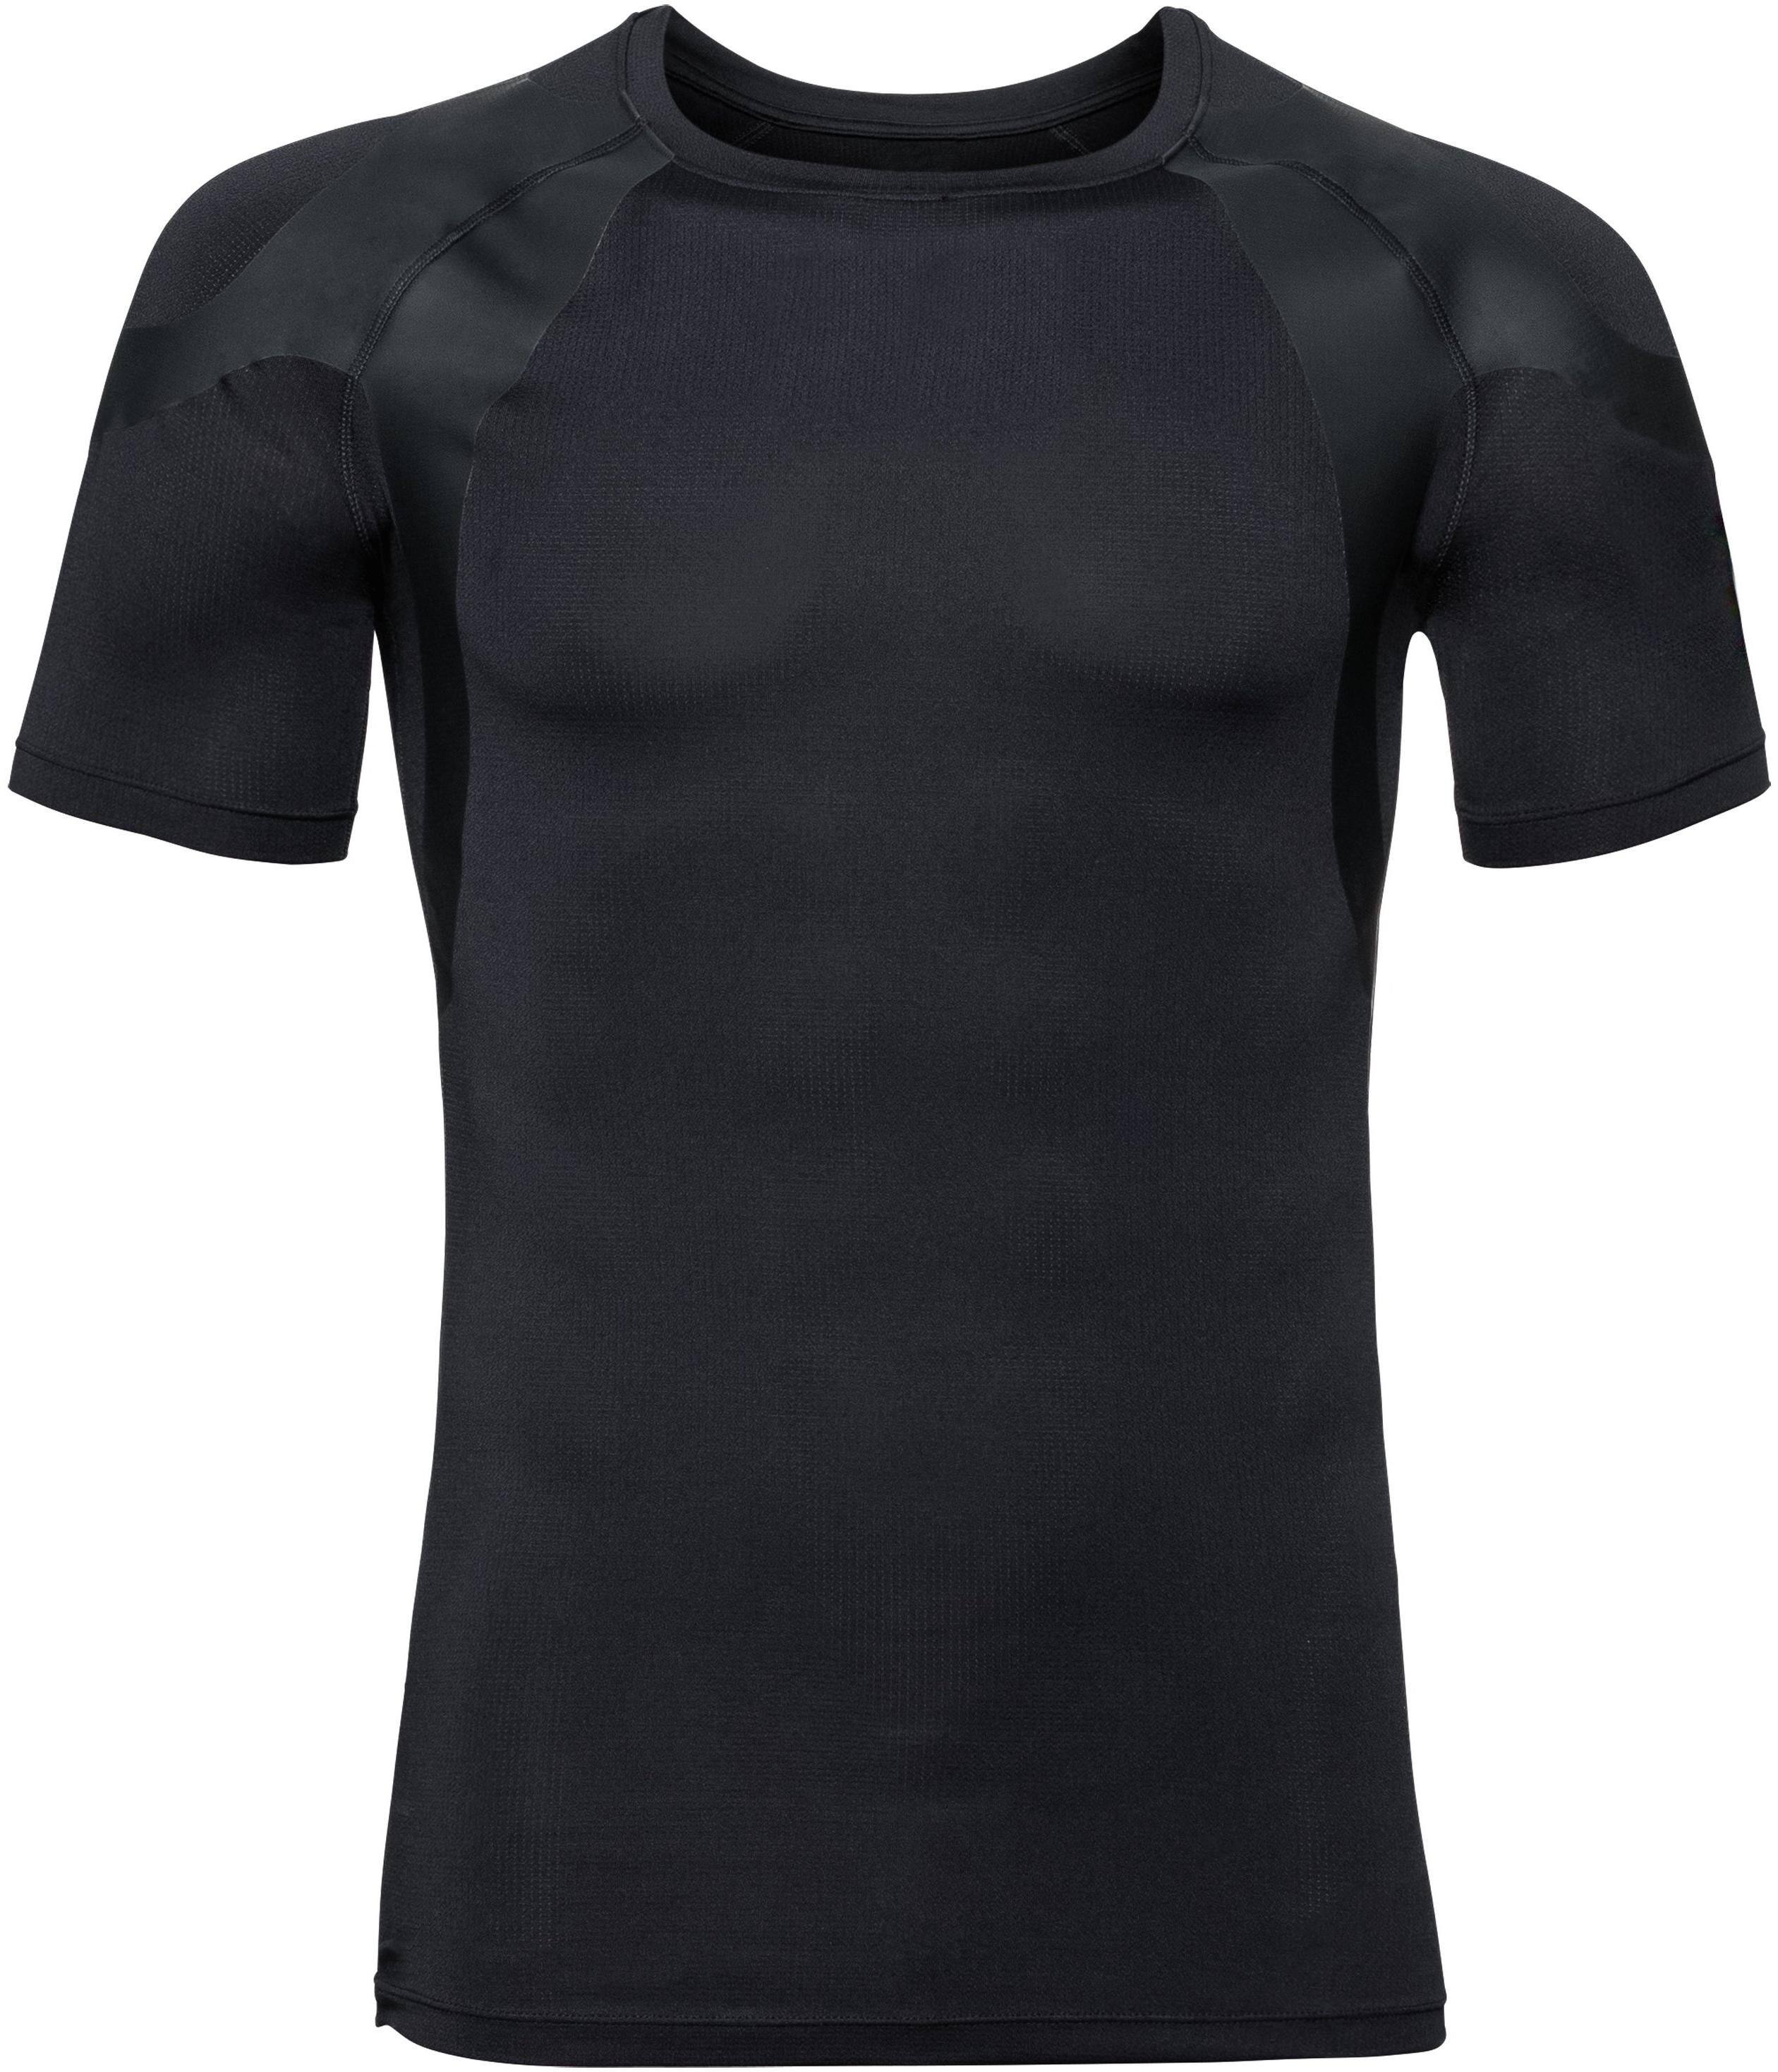 Men’s Active Spine Light Baselayer T-Shirt Black L